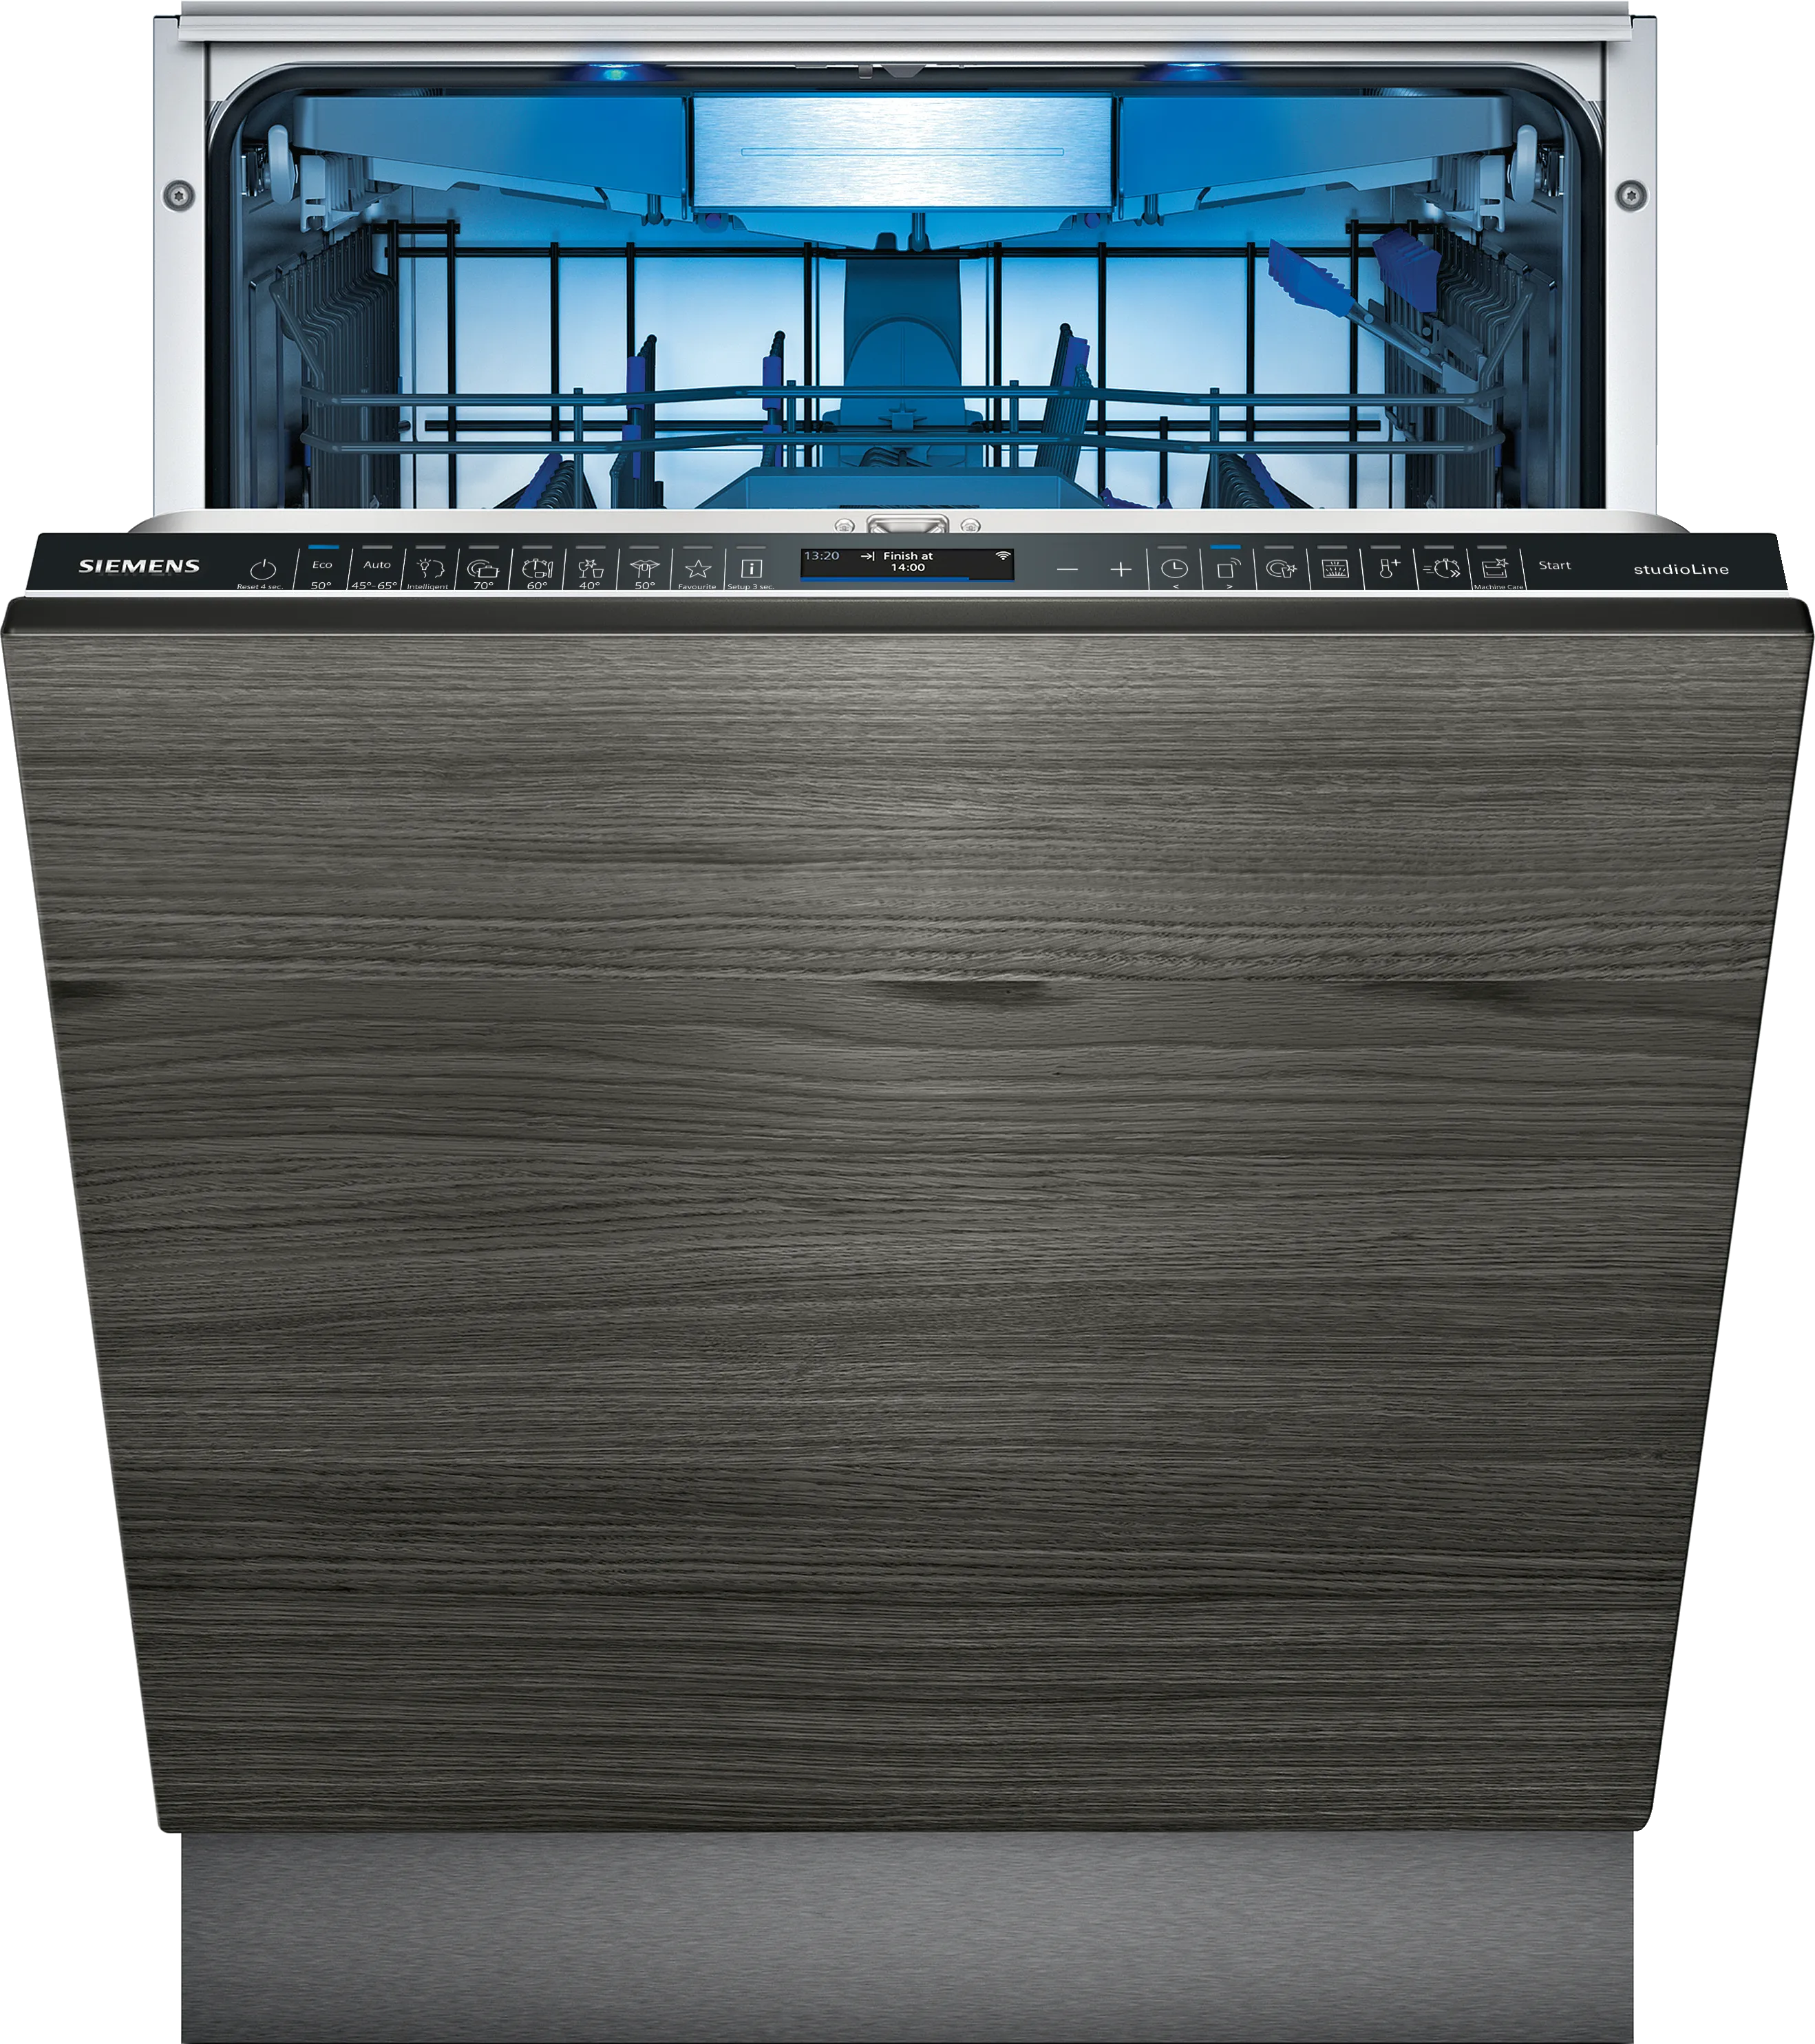 IQ700 fully-integrated dishwasher 60 cm , varioHinge 